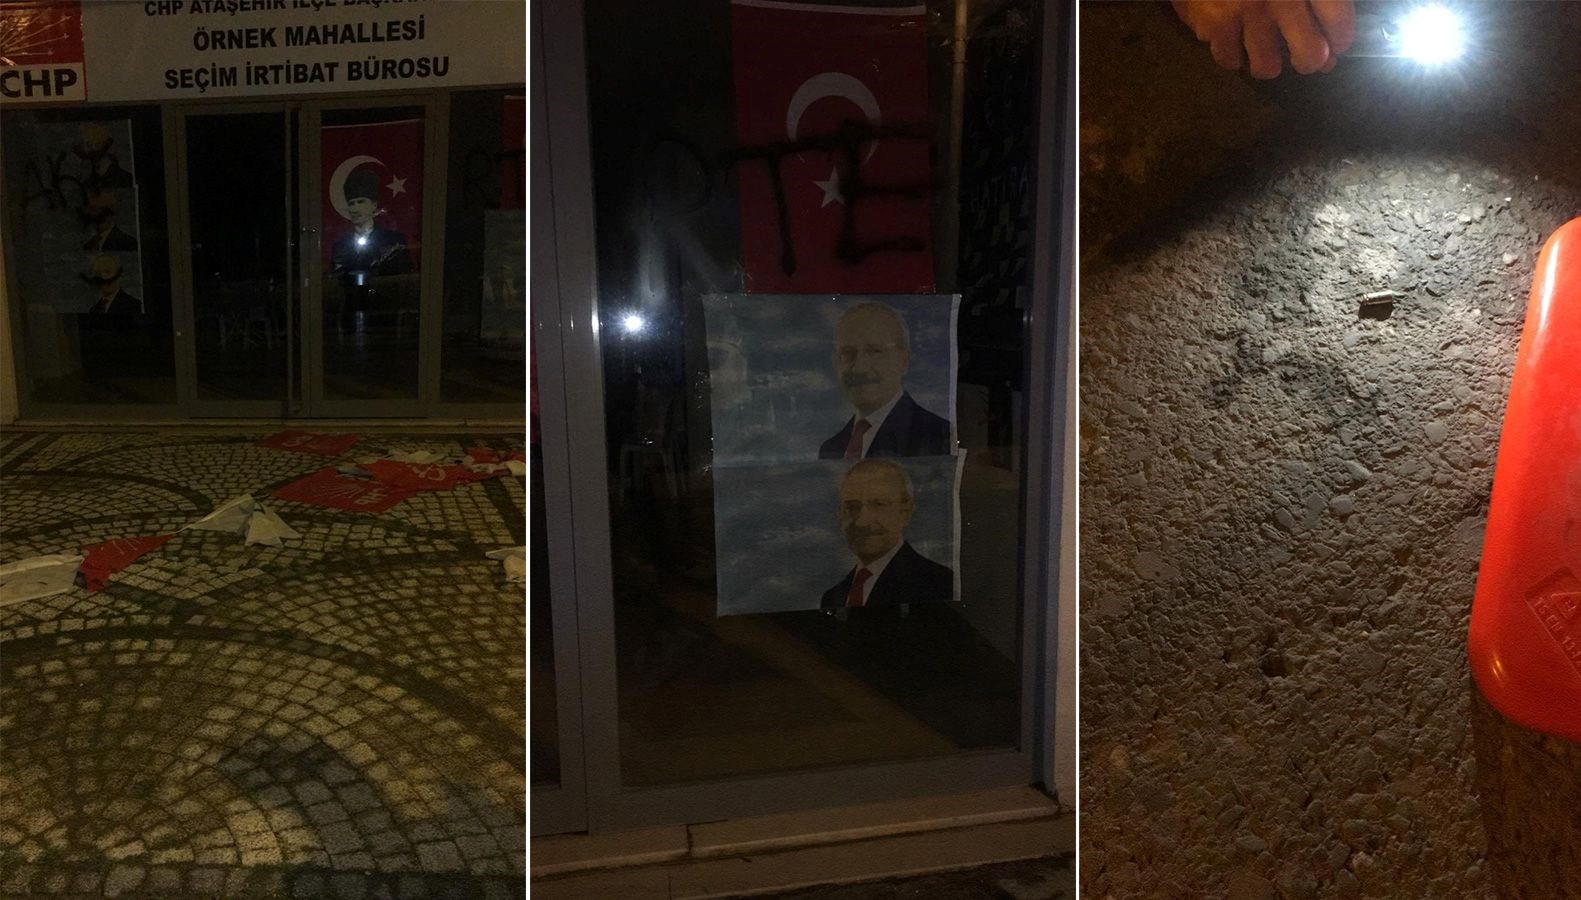 İstanbul’da CHP Seçim İrtibat Ofisi’ne saldıran 6 kişi gözaltında